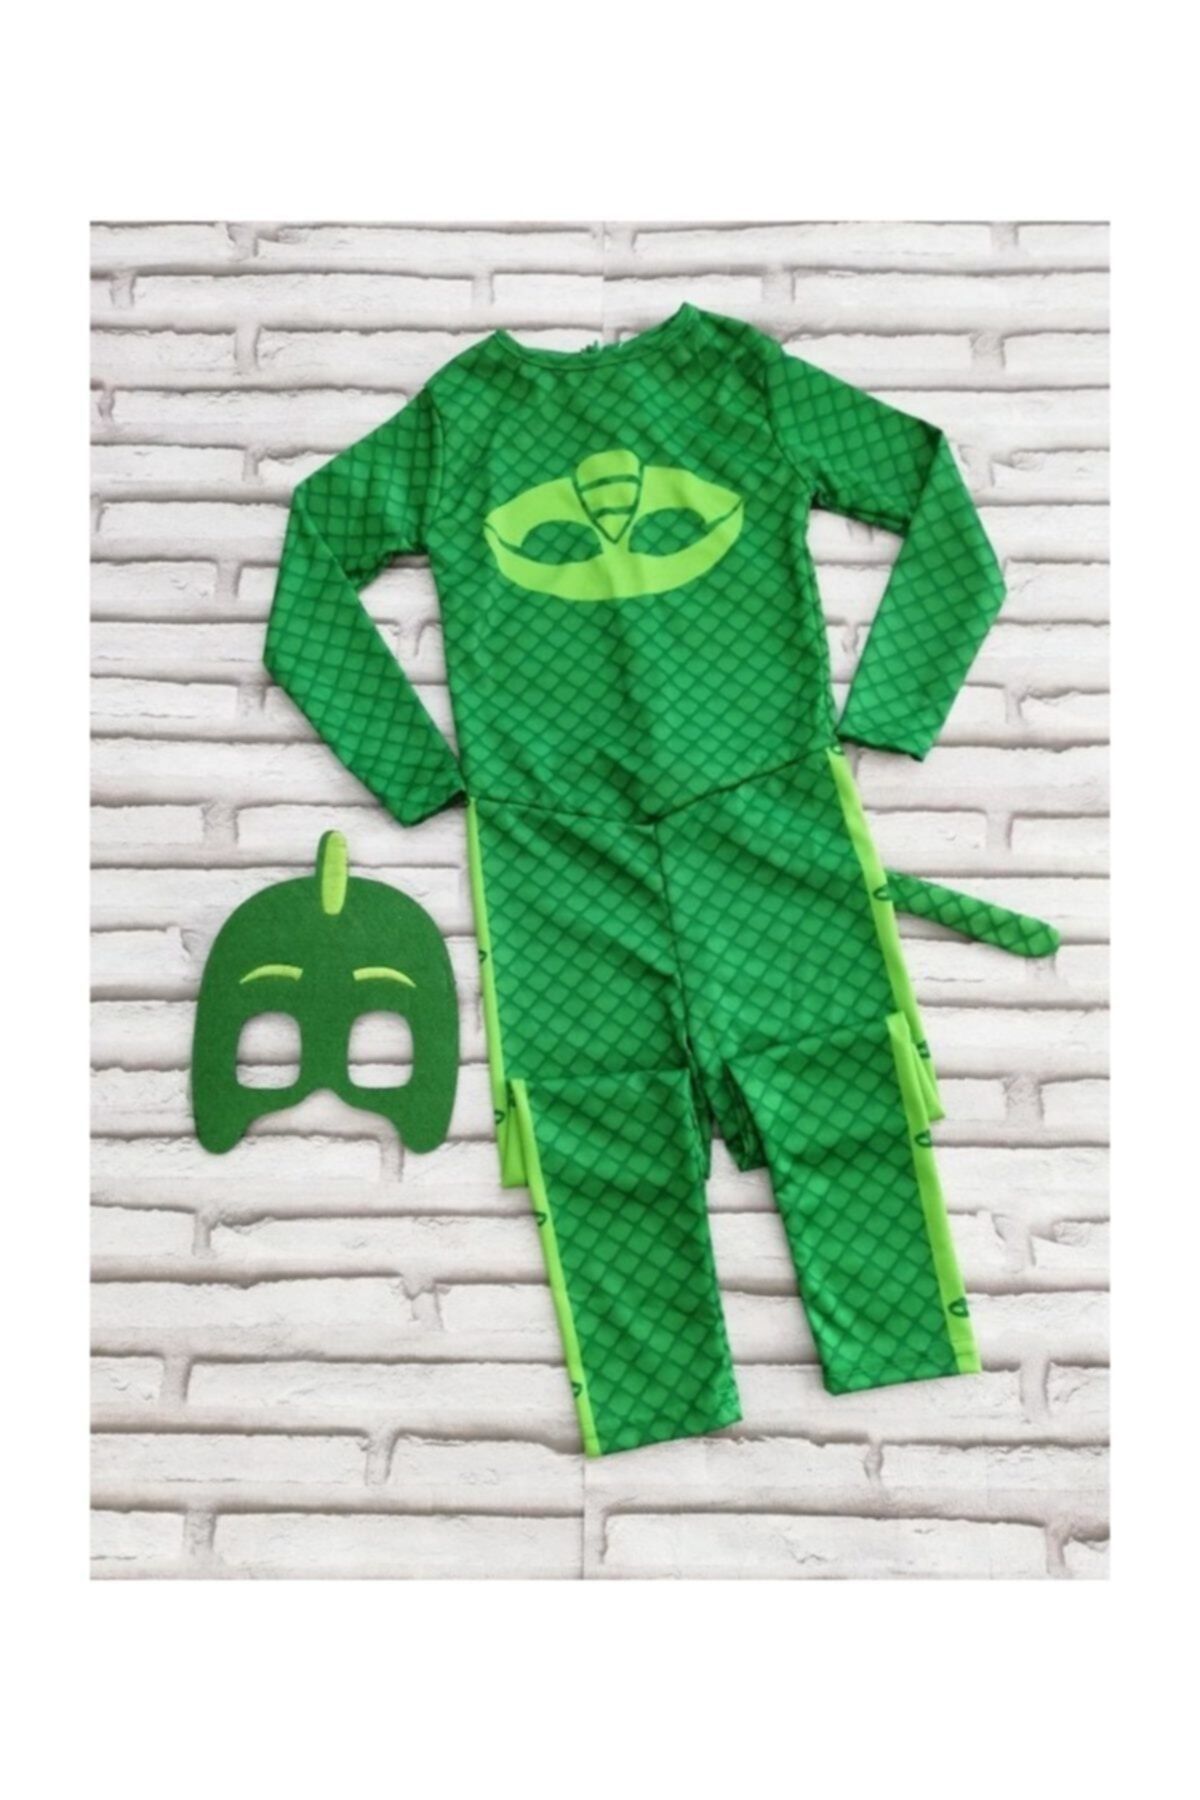 Kelebek Oyuncak Pijamaskeliler (Pjmasks) Kertenkele Çocuk Kostümü-yeşil Gekko Kostümü